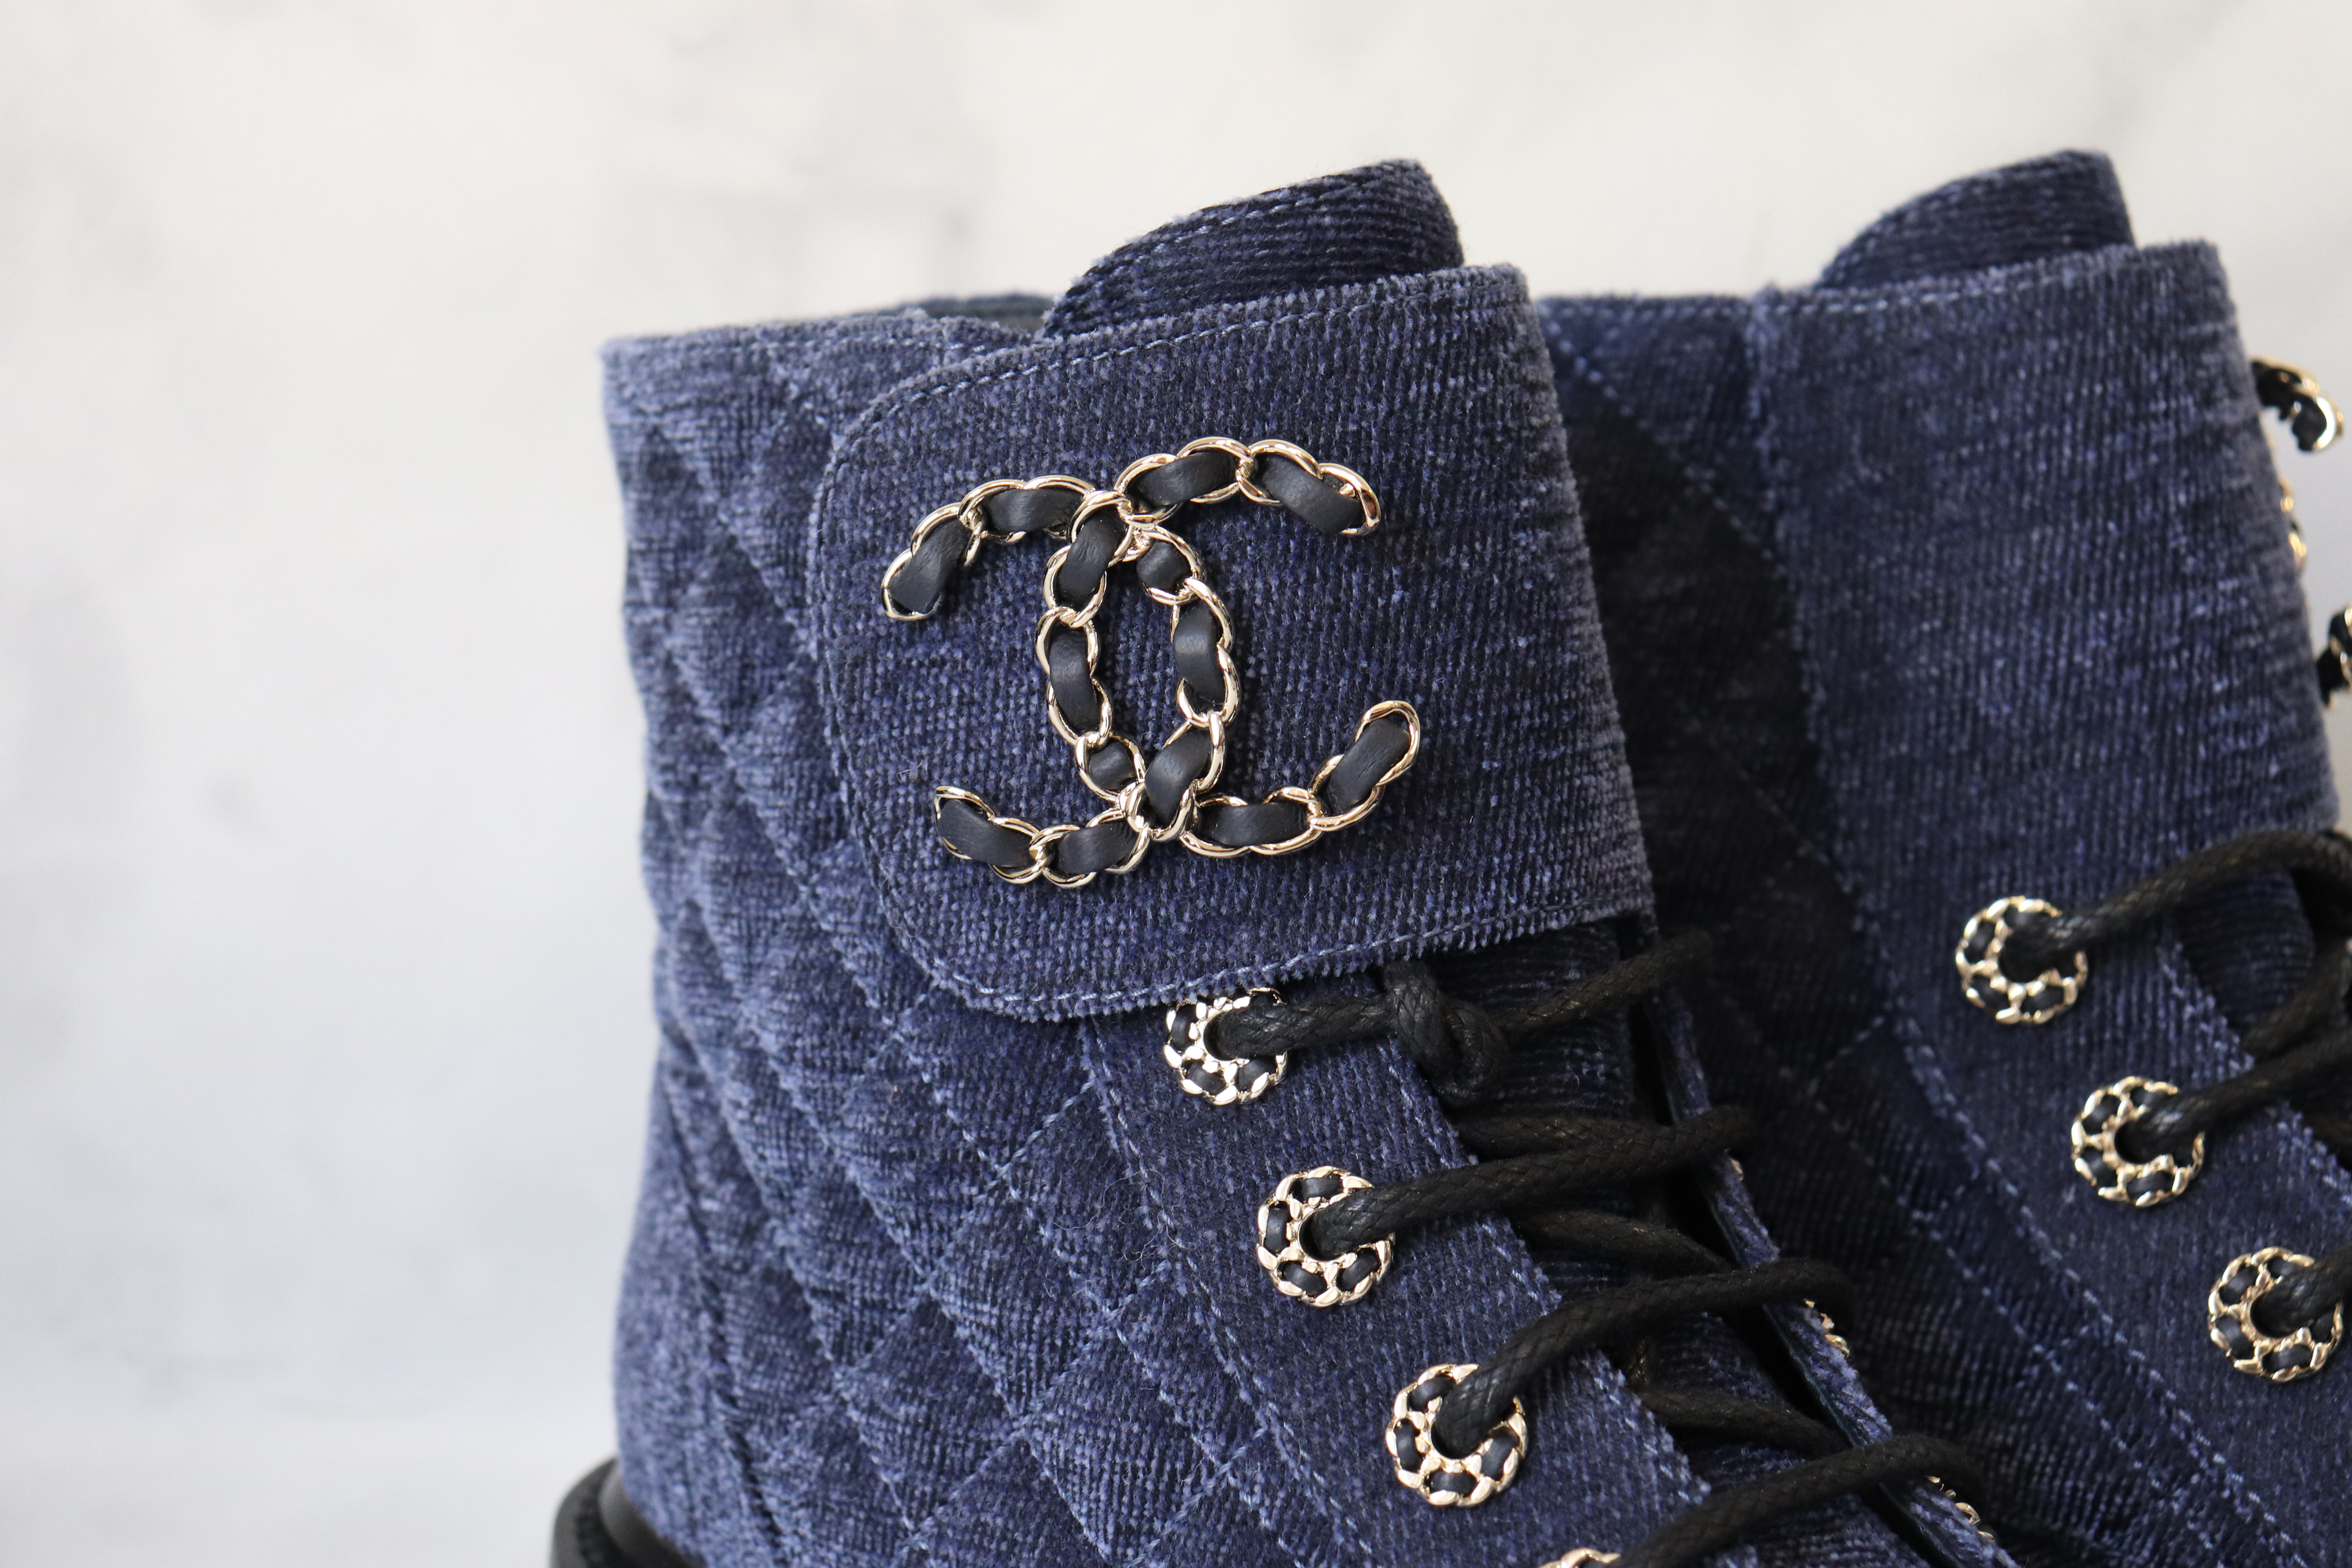 Chanel Combat Boots, Denim, New in Box - Julia Rose Boston